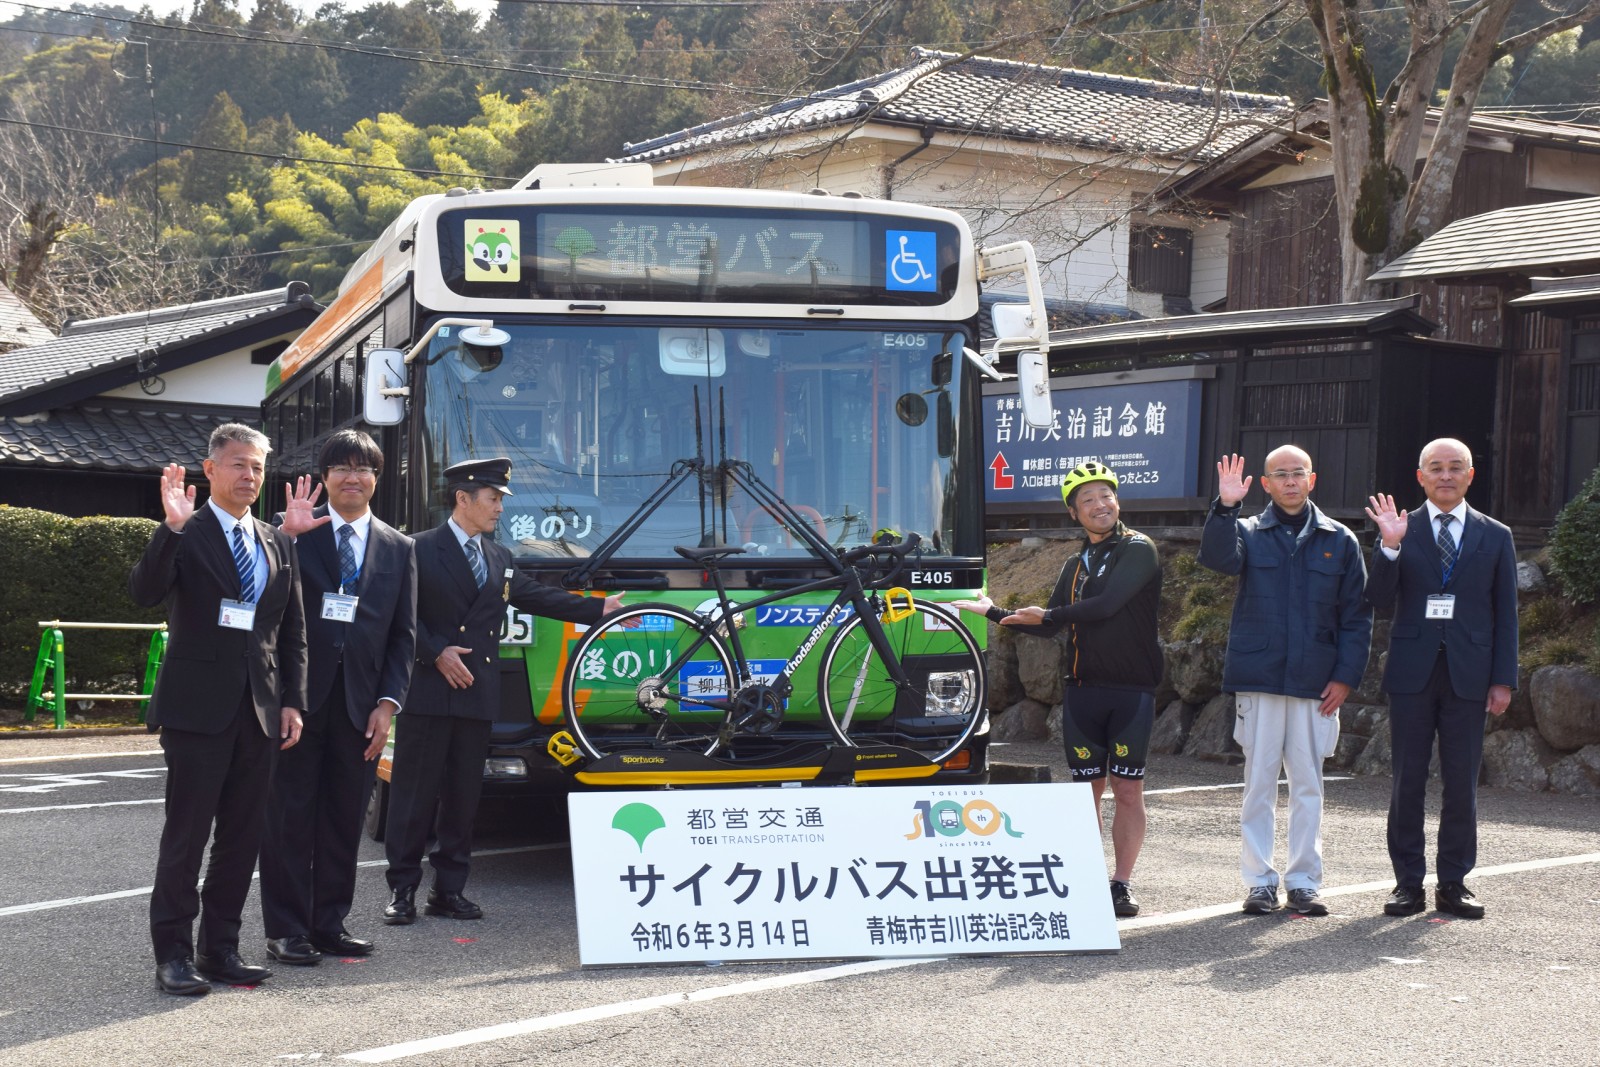 3/14、青梅にてサイクルバス出発式を開催